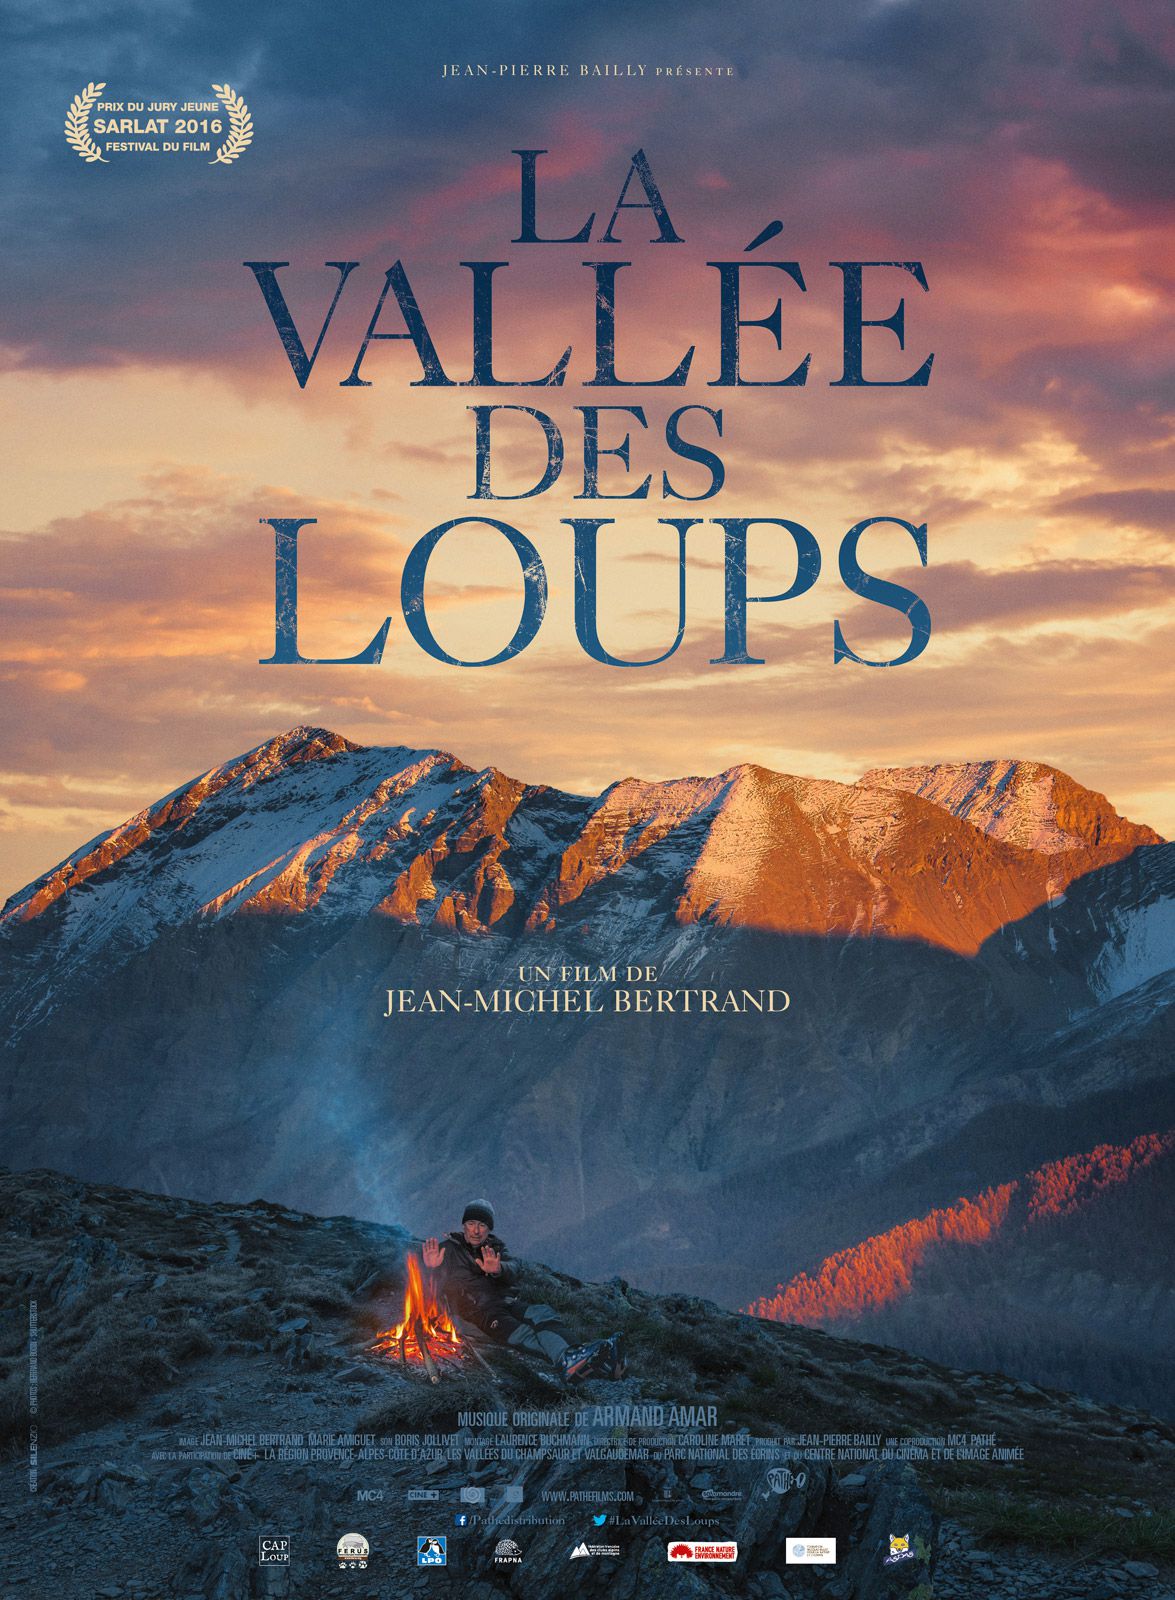 La Vallée des loups - Documentaire (2017) streaming VF gratuit complet